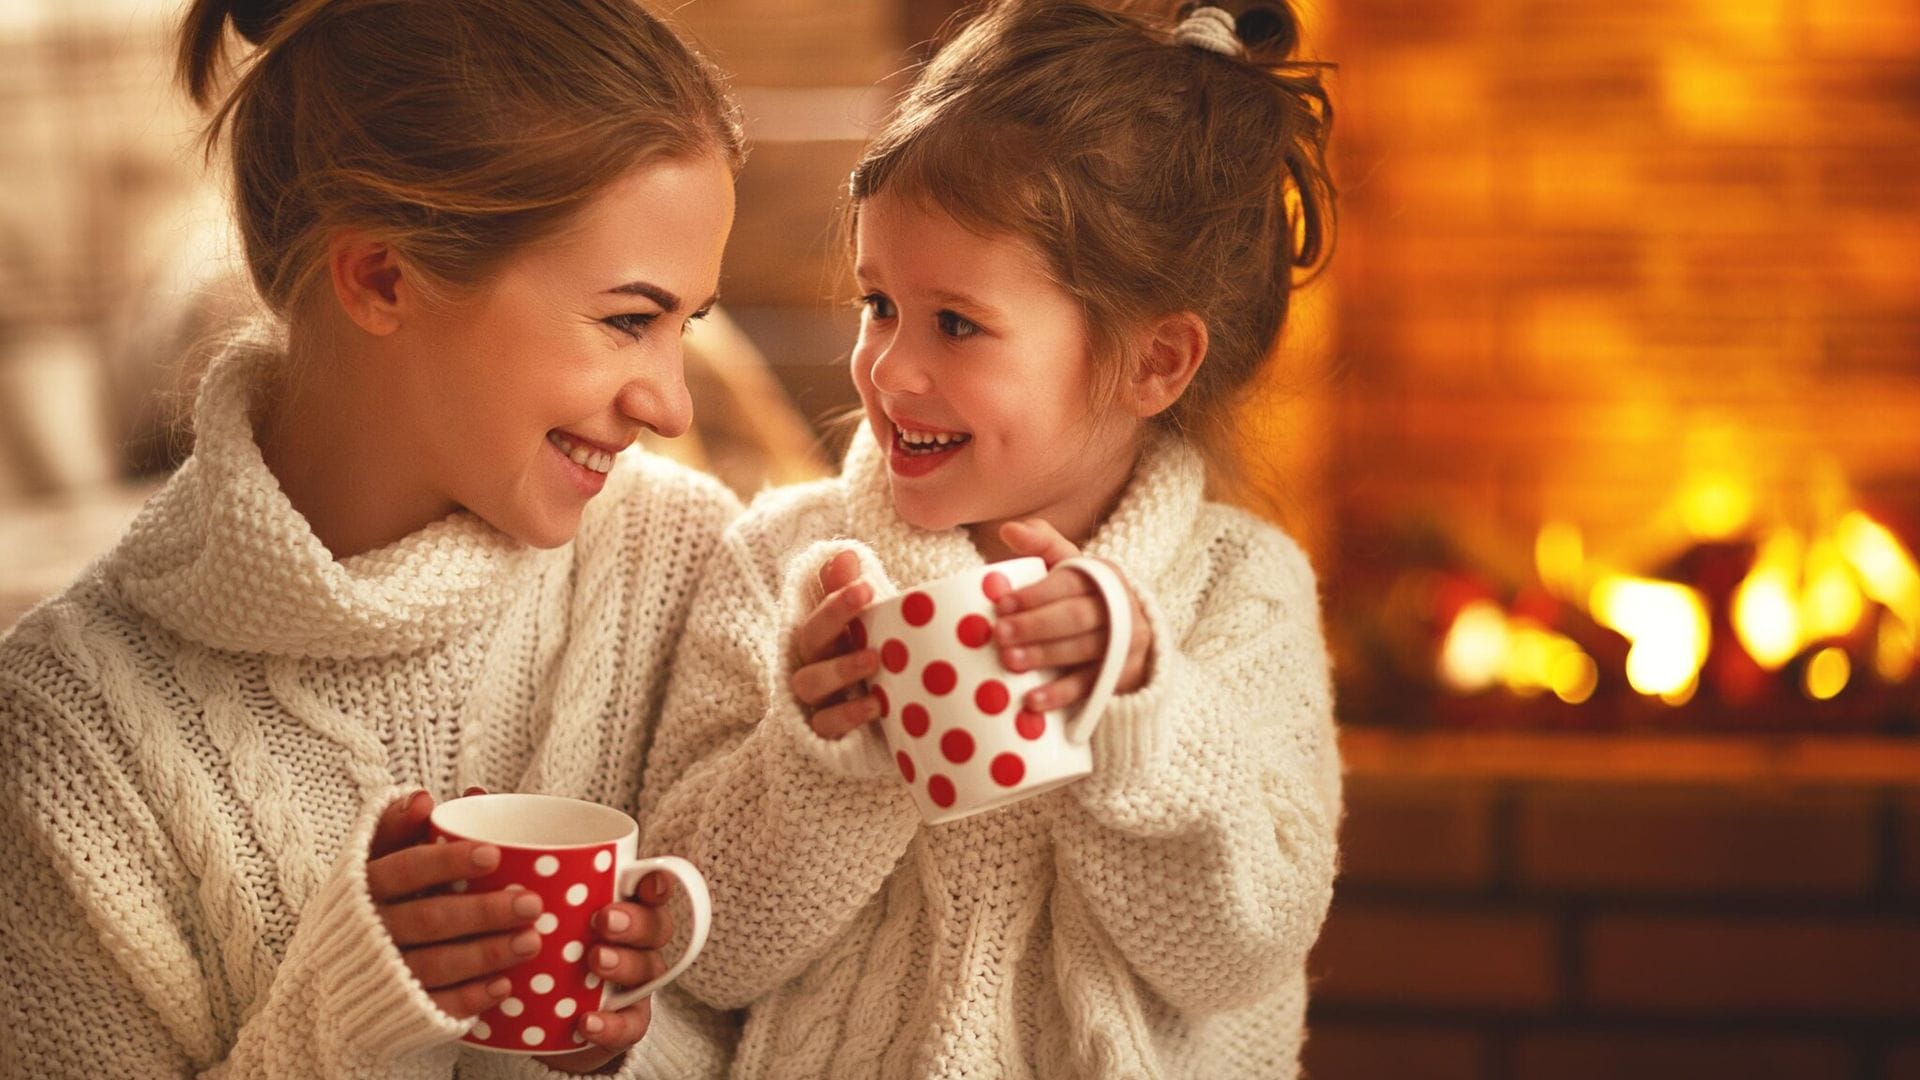 10 planes de invierno en casa para pasarlo genial en familia y ¡calentitos!